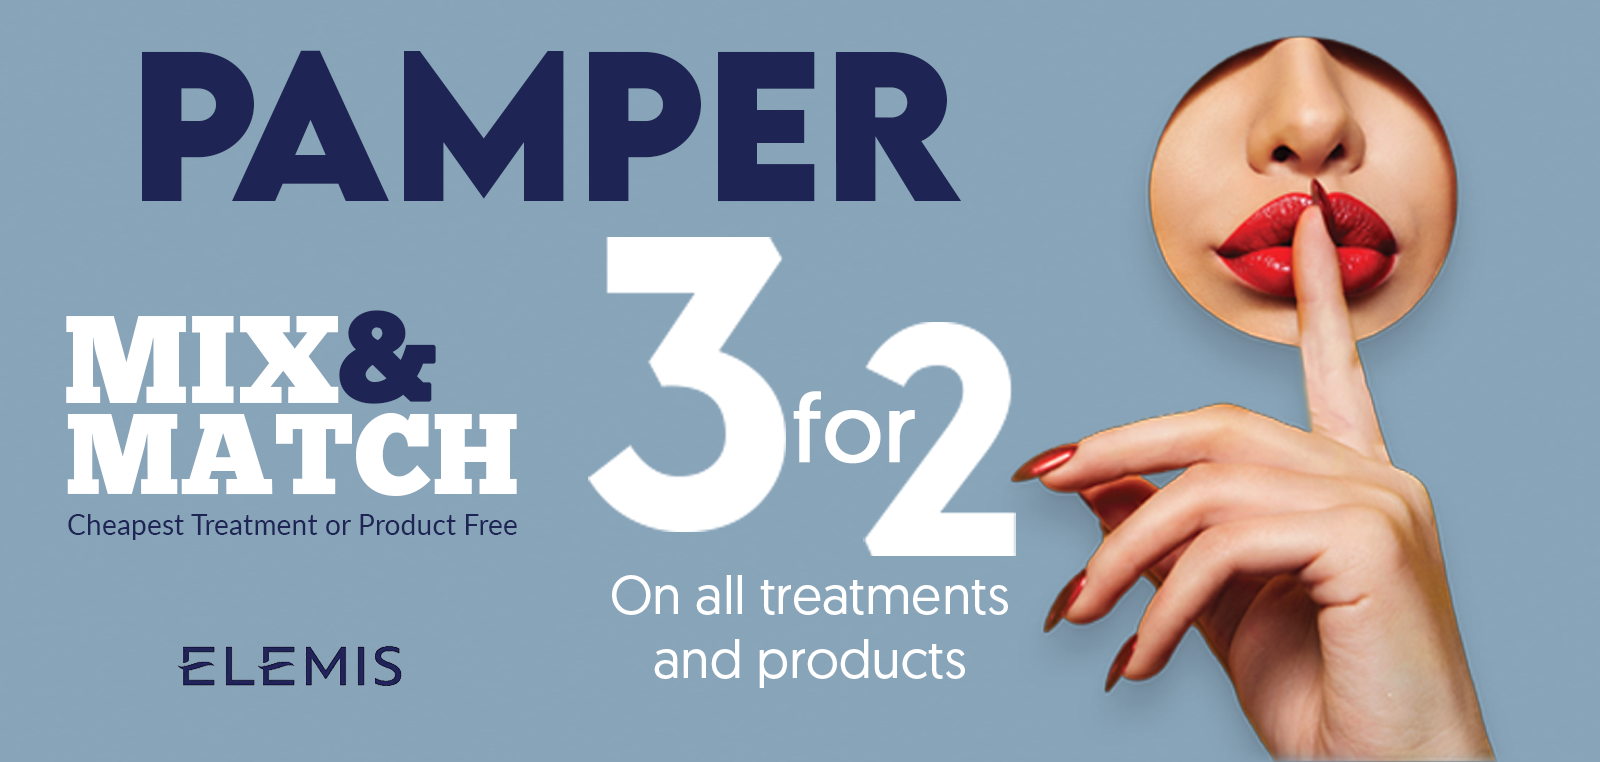 3for2 Mix & Match Pamper Offer banner image